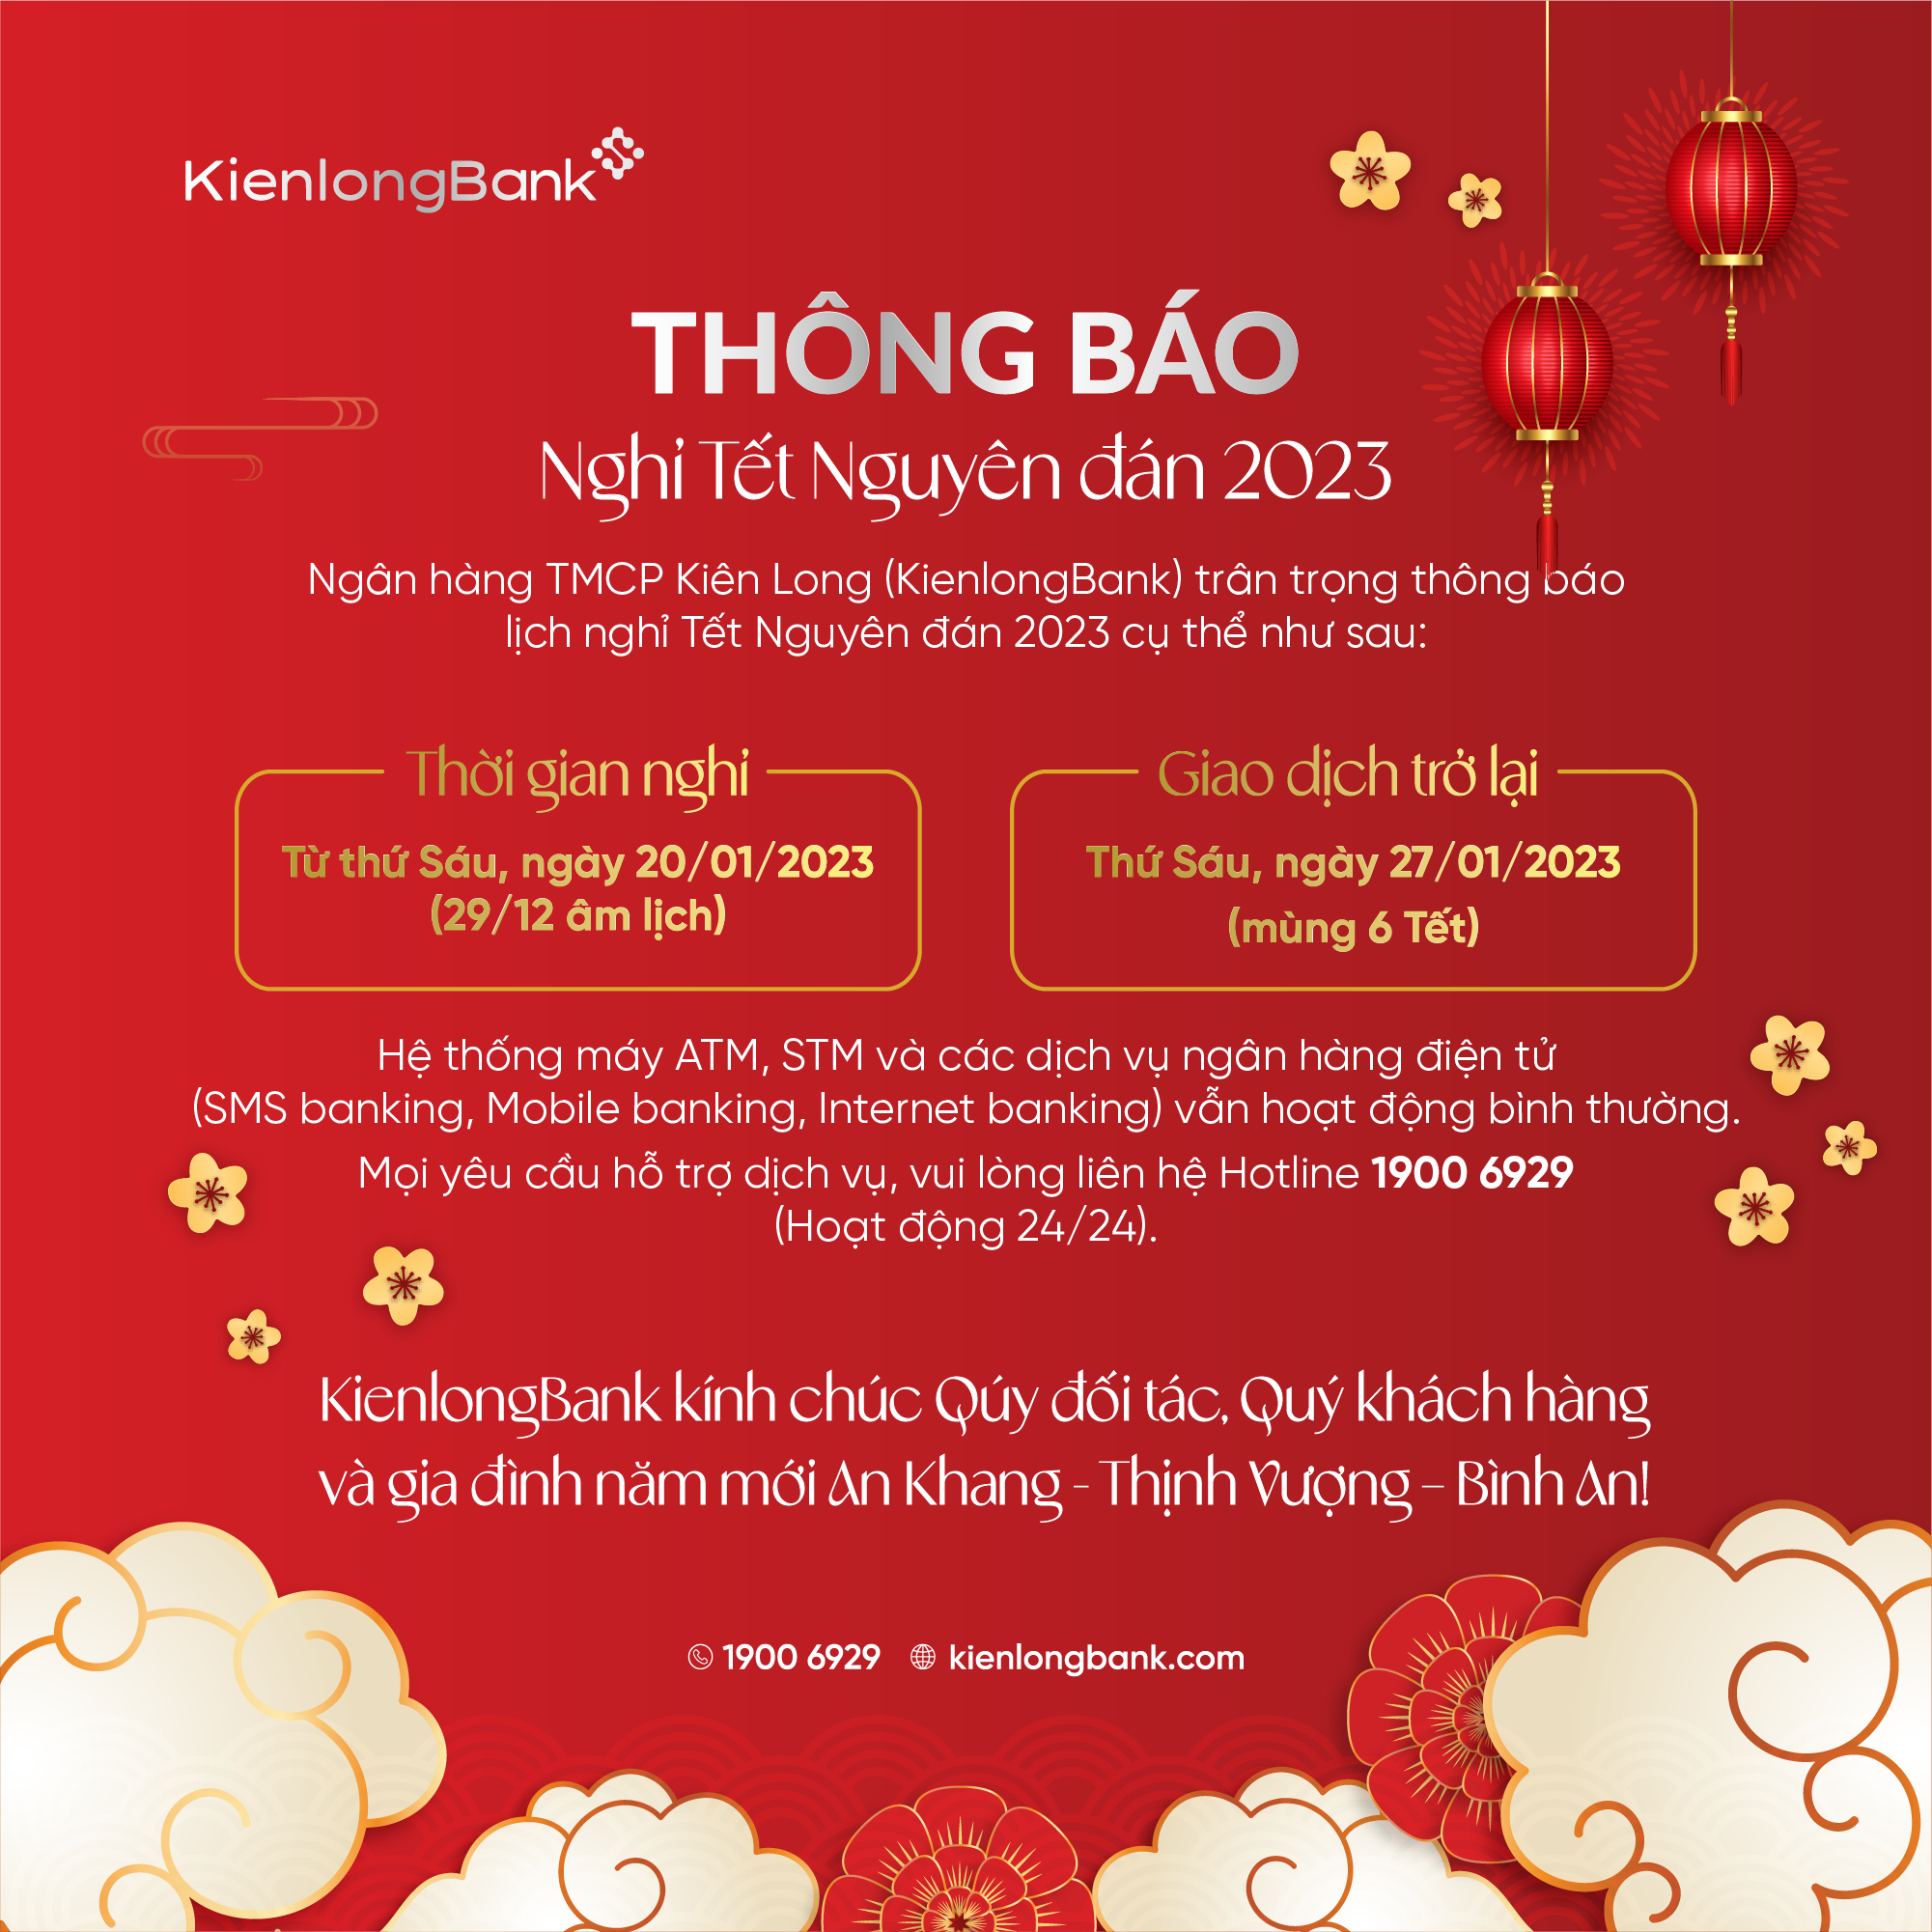 kienlongbank-thong-bao-nghi-tet-nguyen-dan-2023